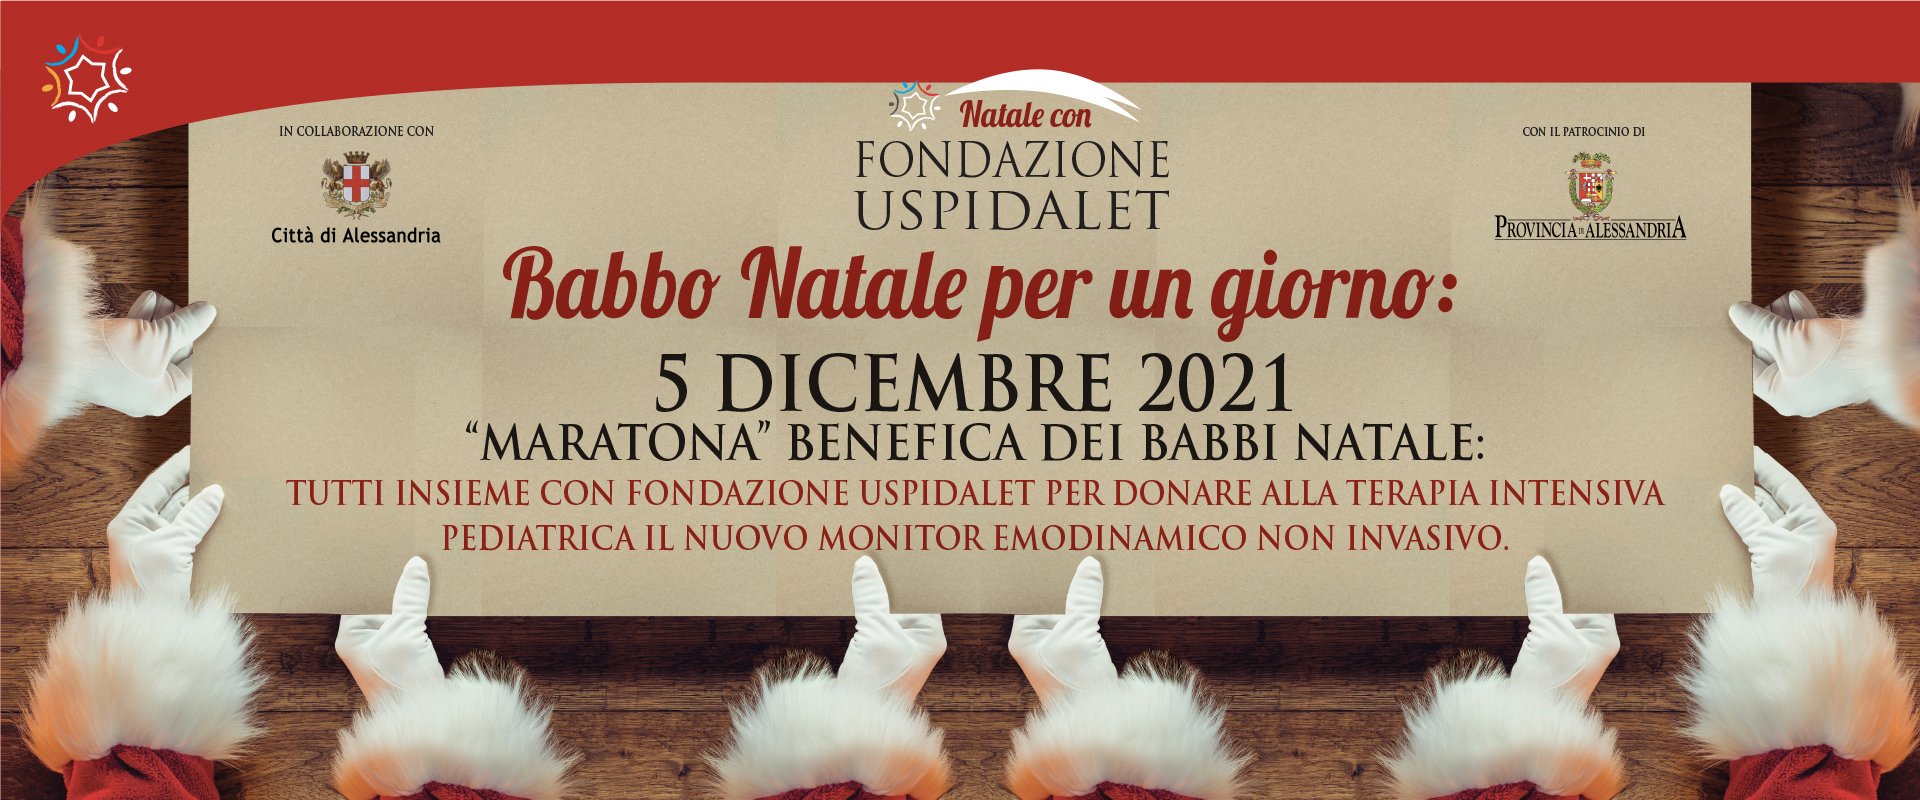 Maxi raduno Babbi Natale: i negozi dove acquistare il costume e sostenere la Fondazione Uspidalet